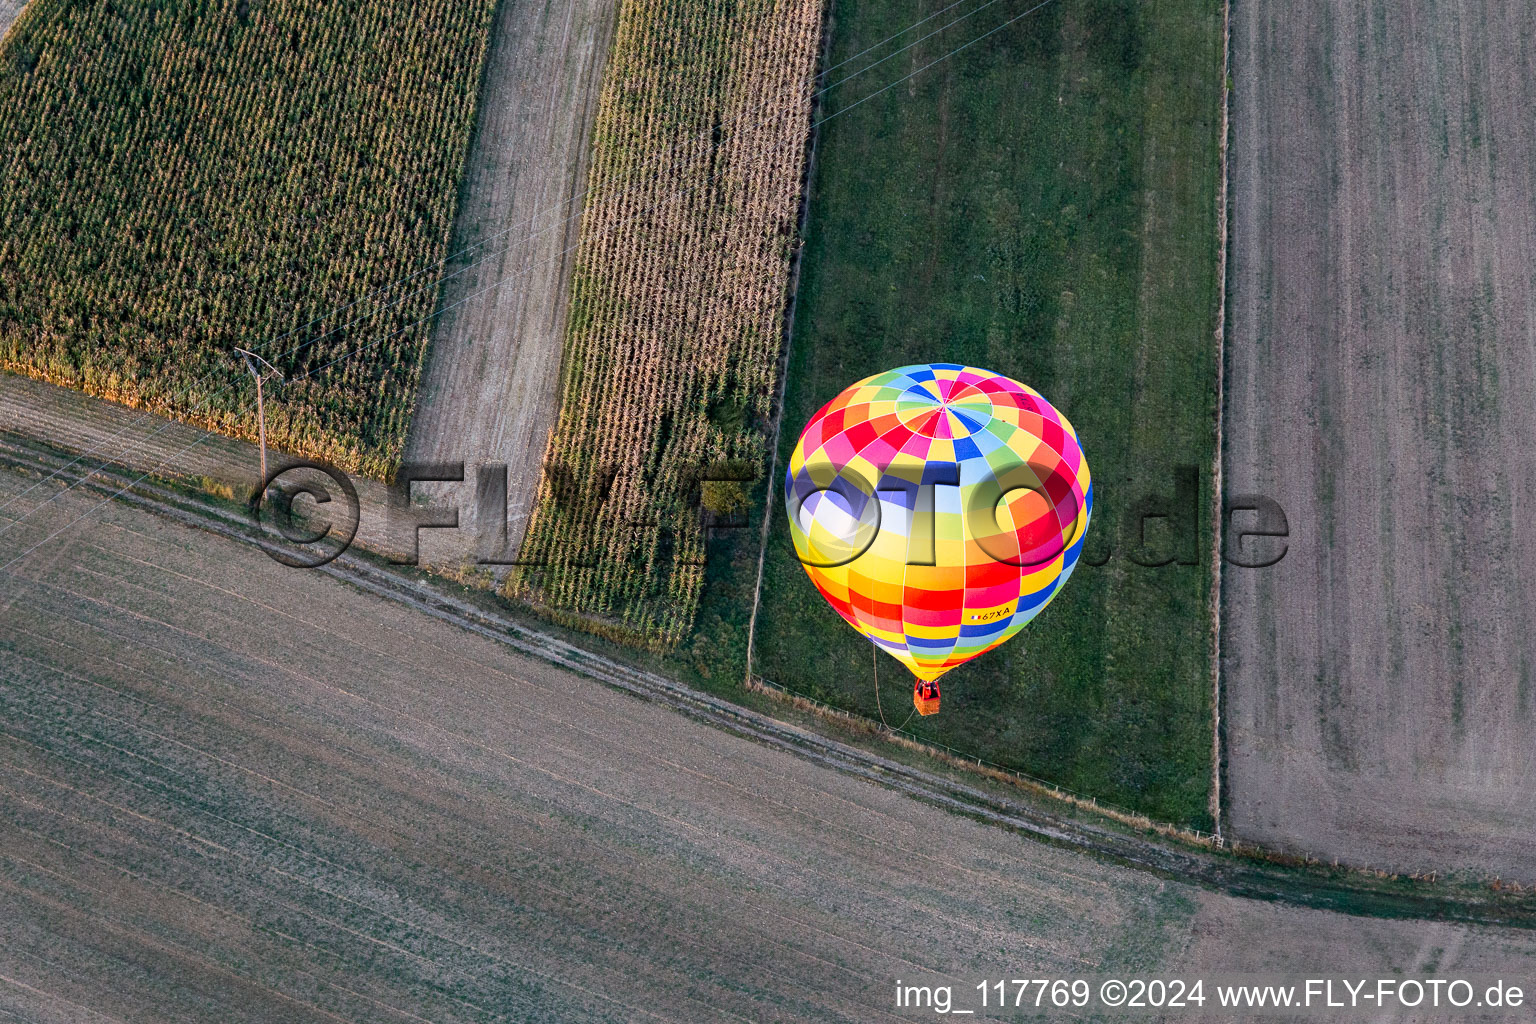 Heißluftballon mit der Kennung 67XA in Fahrt über dem Luftraum in Gundershoffen in Grand Est in Forstheim im Bundesland Bas-Rhin, Frankreich